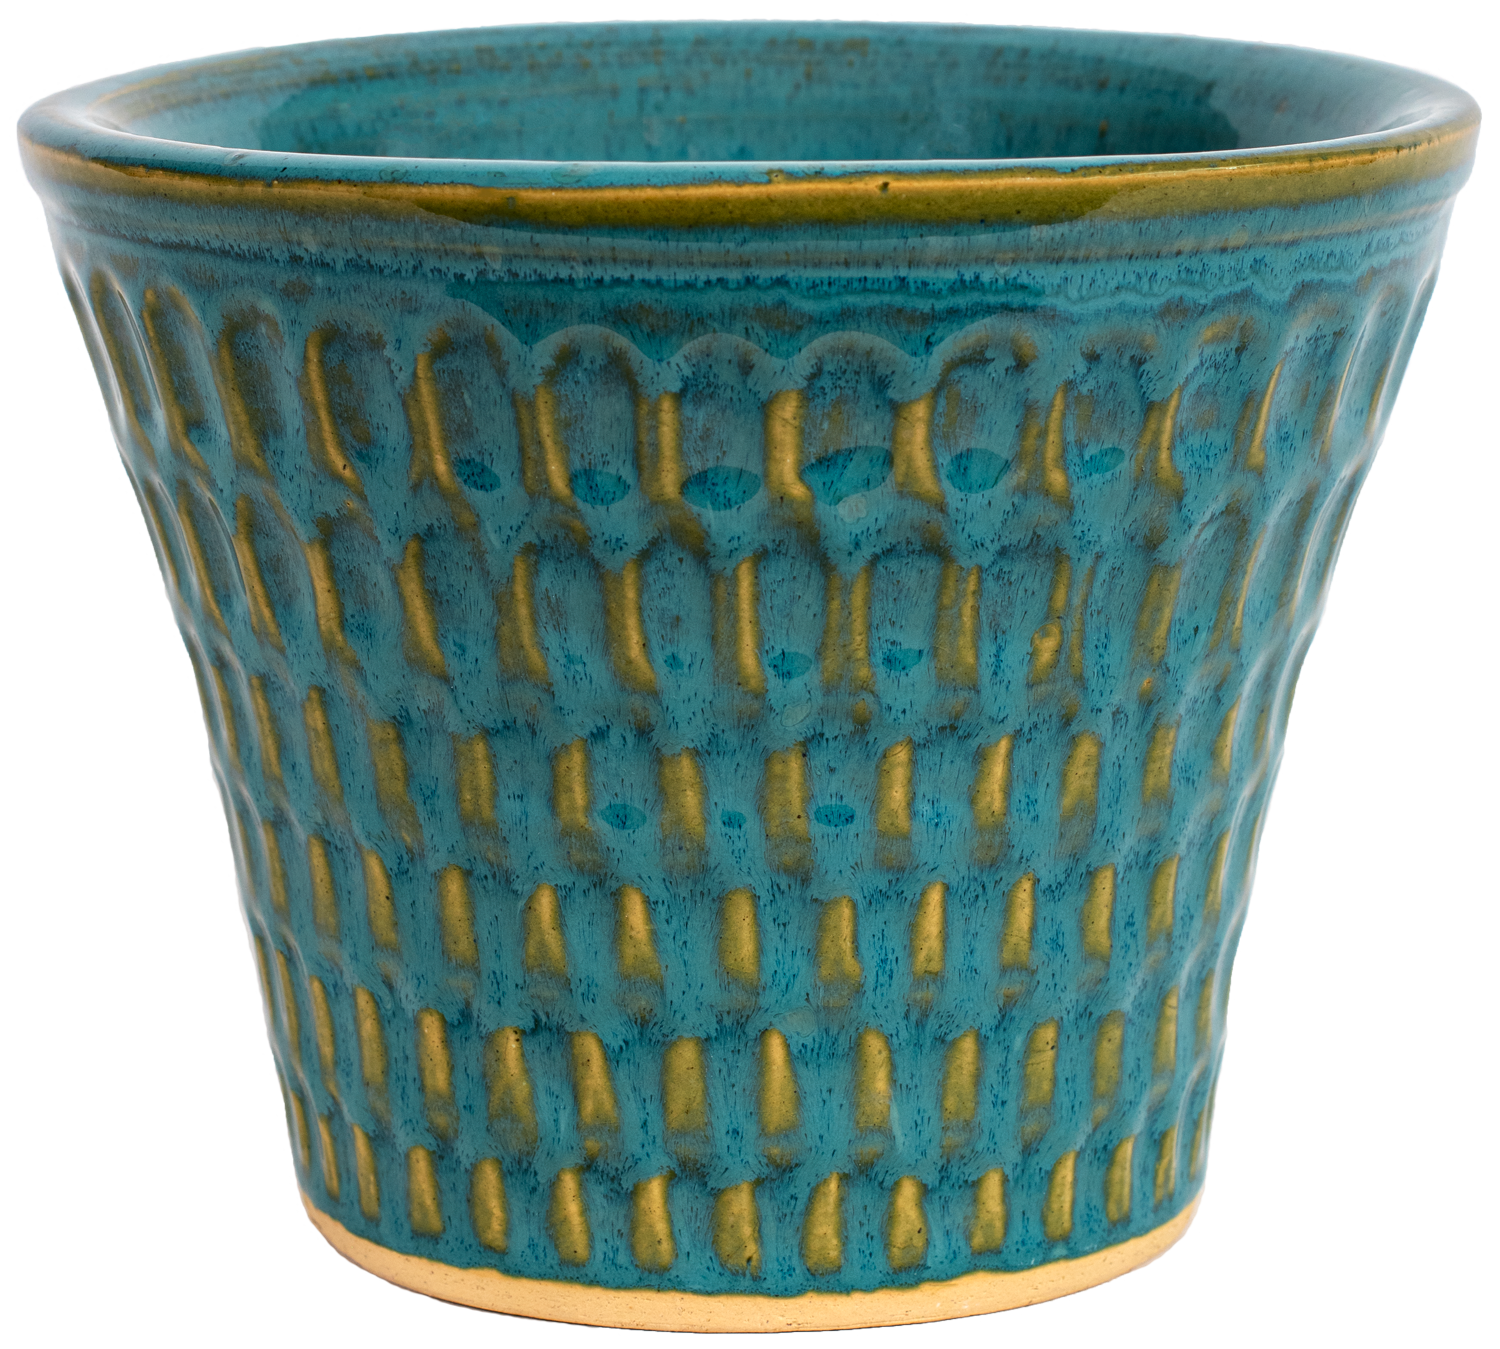 medium turquoise ceramic planter with oval design